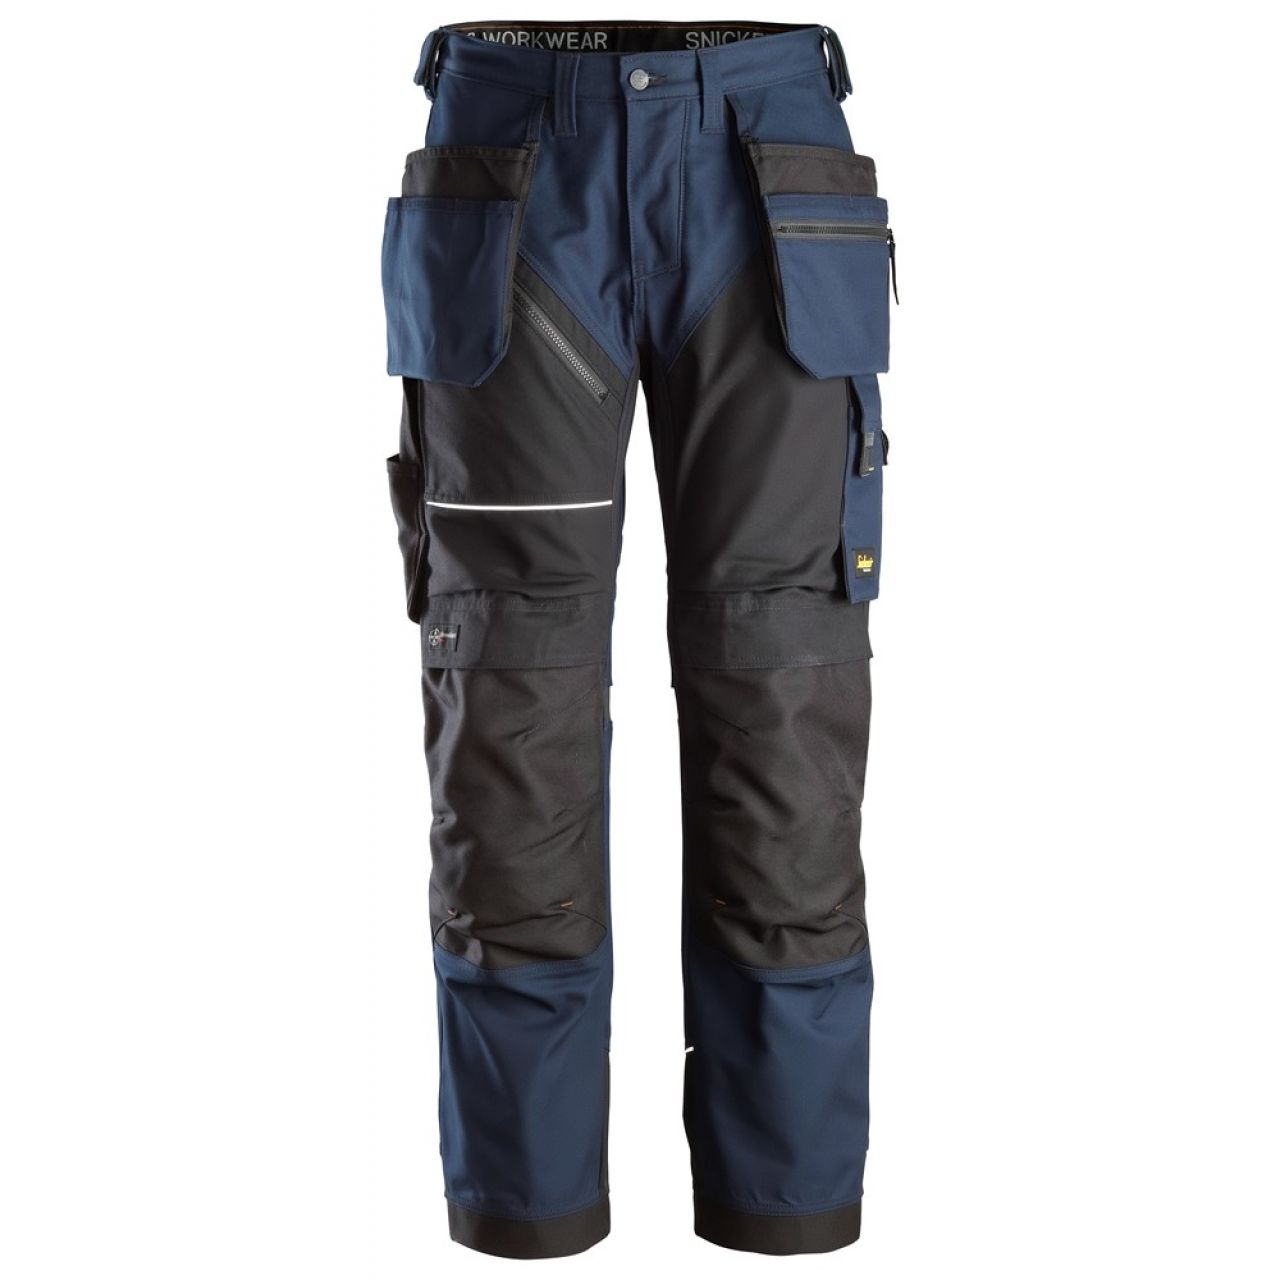 6214 Pantalones largos de trabajo con bolsillos flotantes Canvas+ RuffWork azul marino-negro talla 158